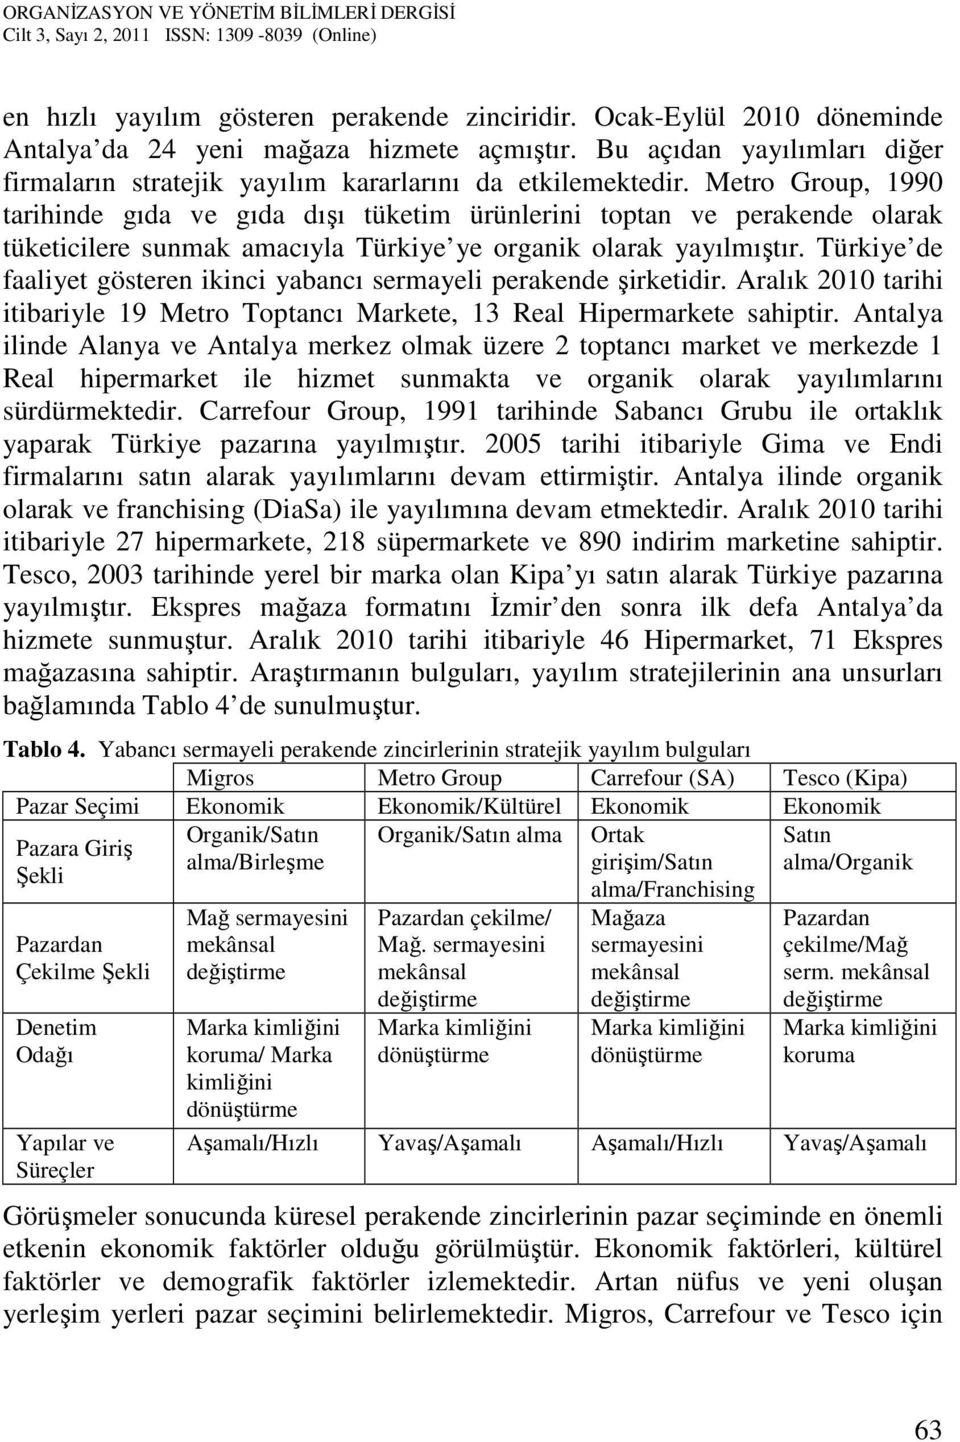 Metro Group, 1990 tarihinde gıda ve gıda dışı tüketim ürünlerini toptan ve perakende olarak tüketicilere sunmak amacıyla Türkiye ye organik olarak yayılmıştır.